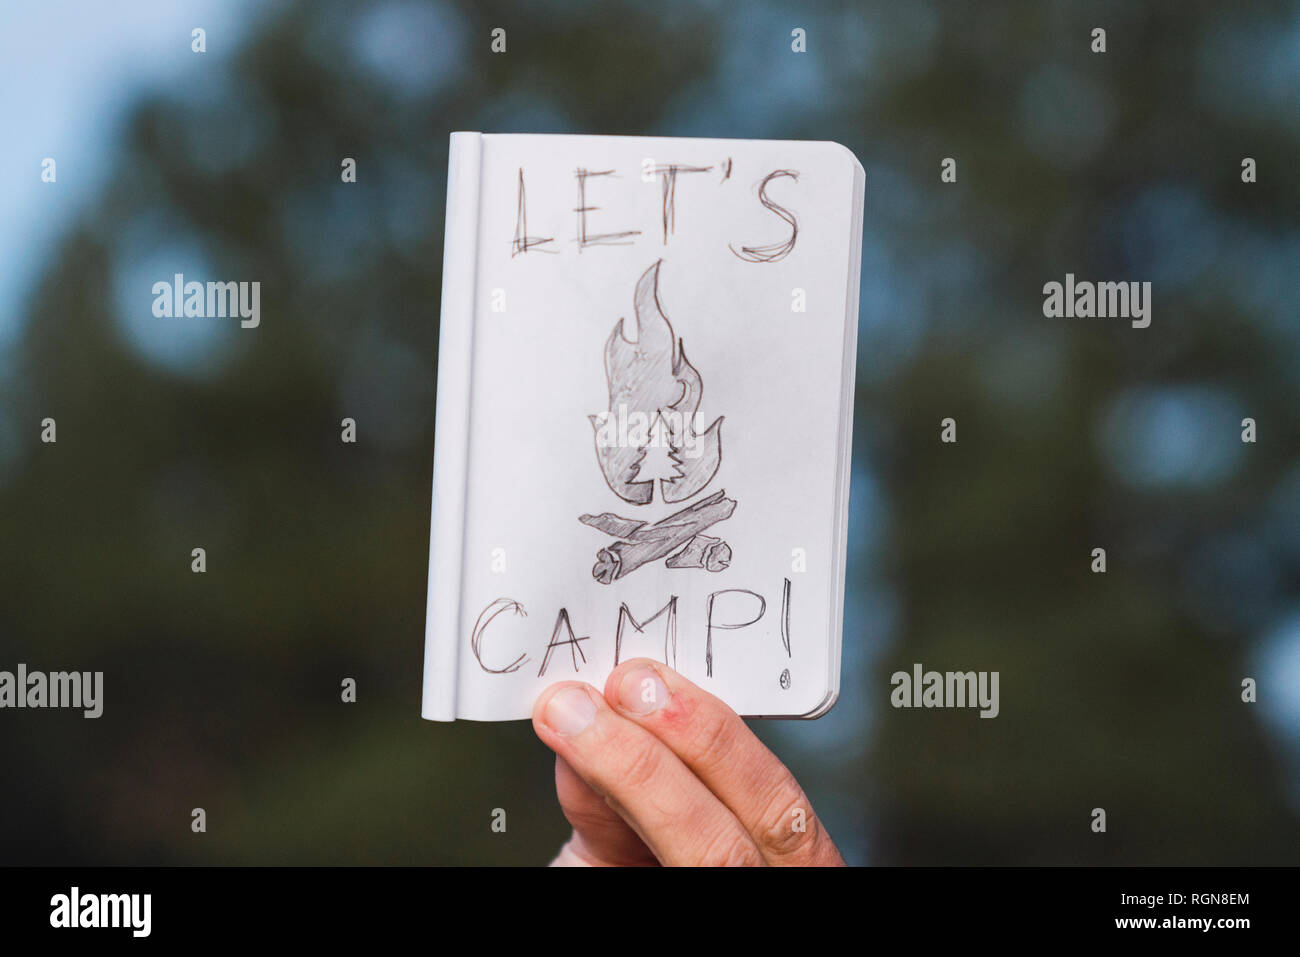 La main dans une forêt holding "Let's Camp' sign Banque D'Images